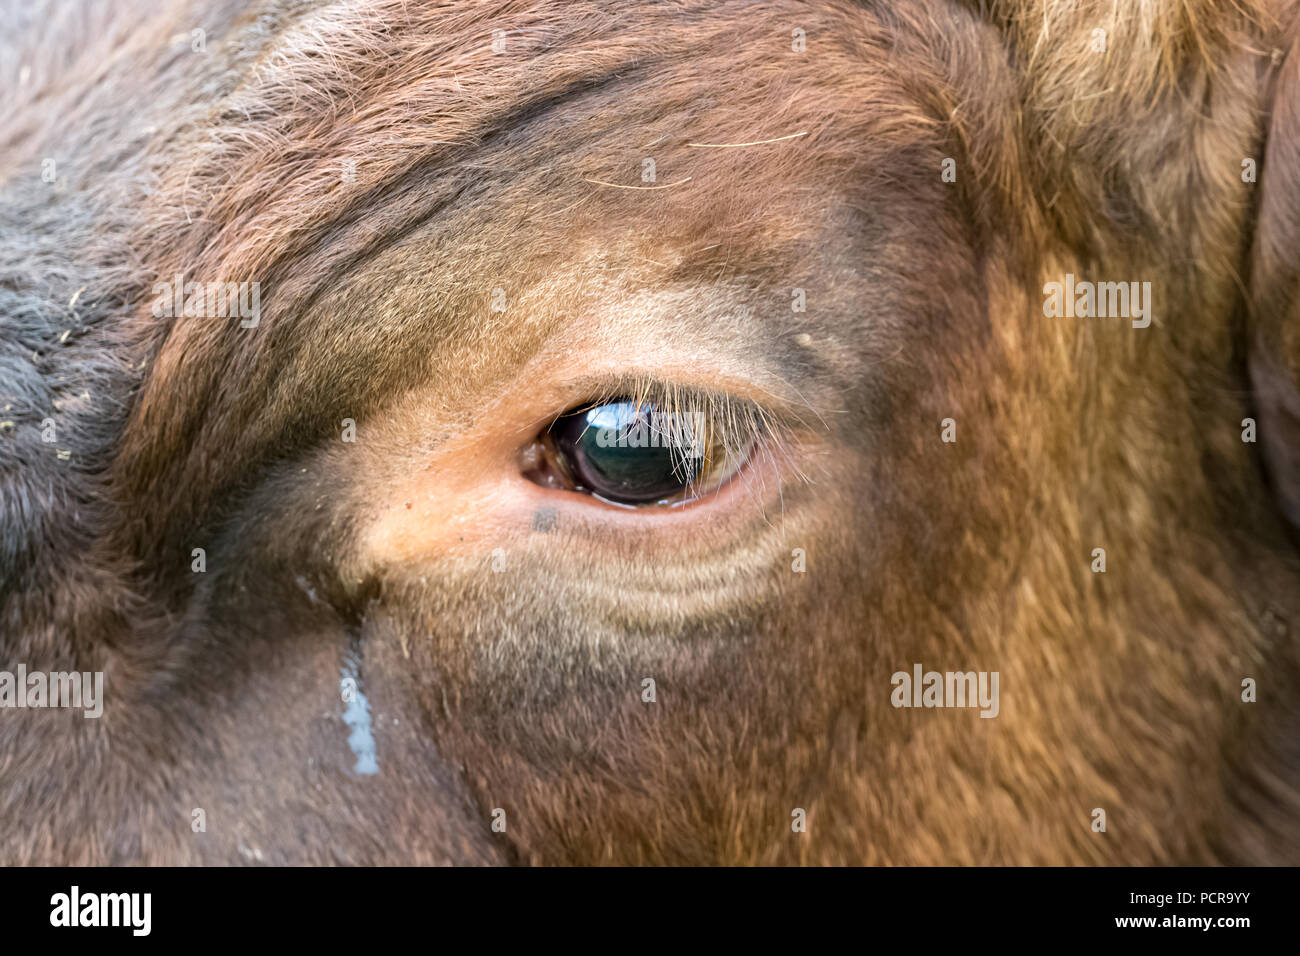 Pleurs de l'œil de la vache. Gros plan de l'œil d'une vache avec des déchirures du conduit de déchirure. Bien-être des animaux. Végétaliens. Horizontale. Copier l'espace Banque D'Images